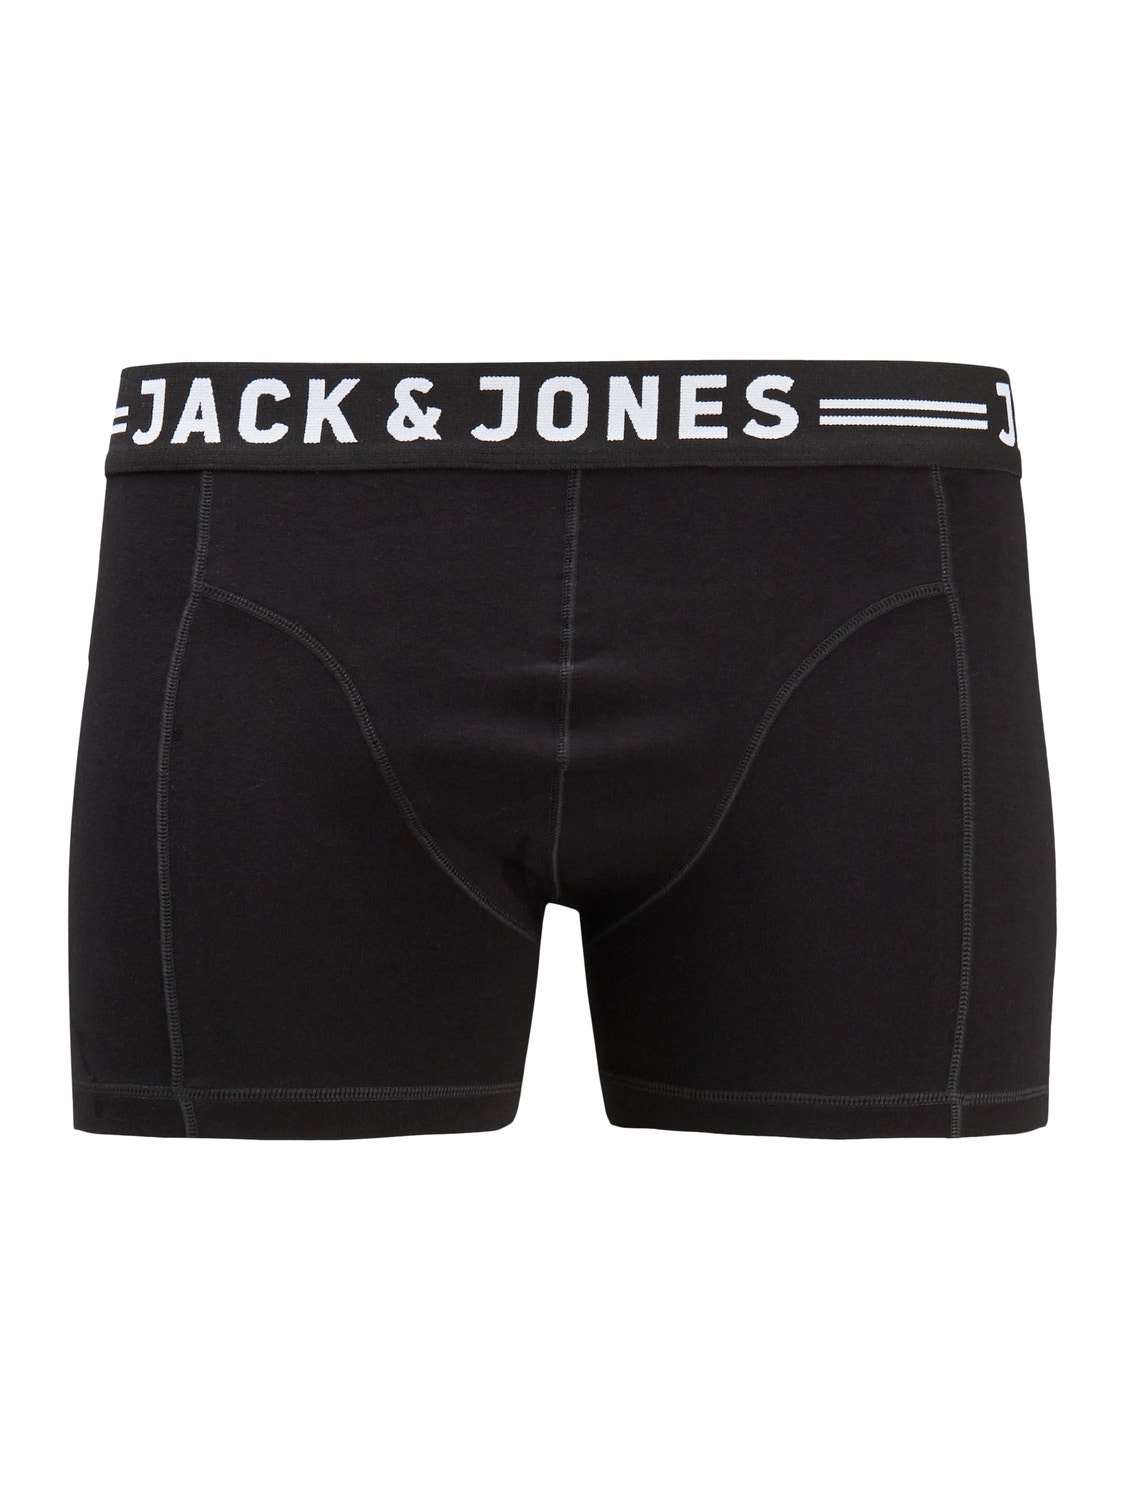 Jack & Jones Plus 3 Trunks -Black - 12147591